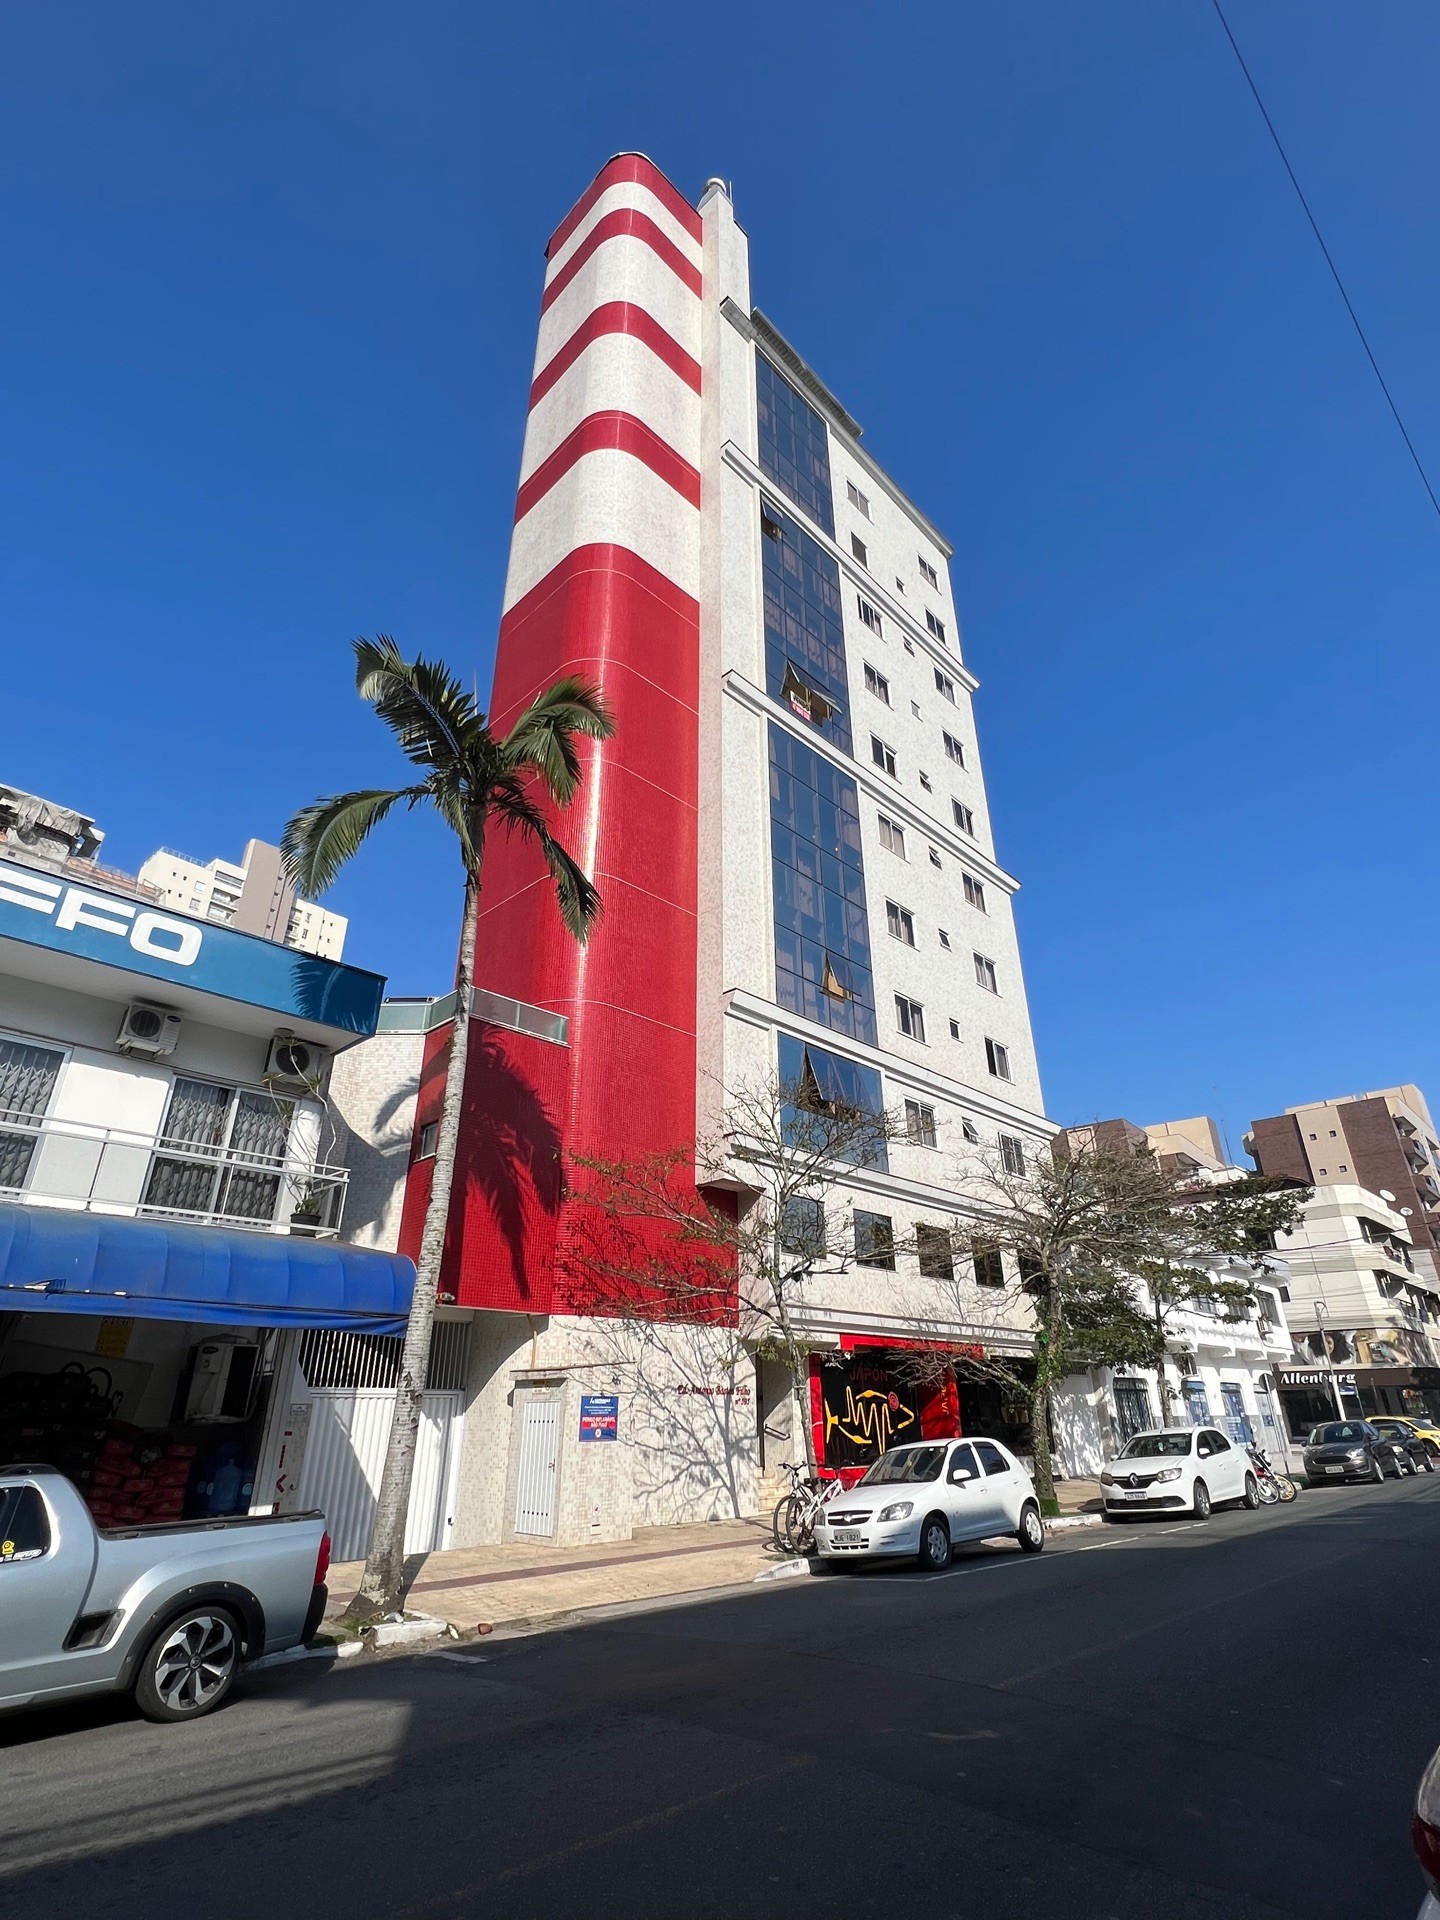 Oportunidade, Apartamento 1 por andar, mobiliado, 3 dormitórios, sendo 1 suíte, rua reta ao mar, localizado em Balneário Camboriú - SC